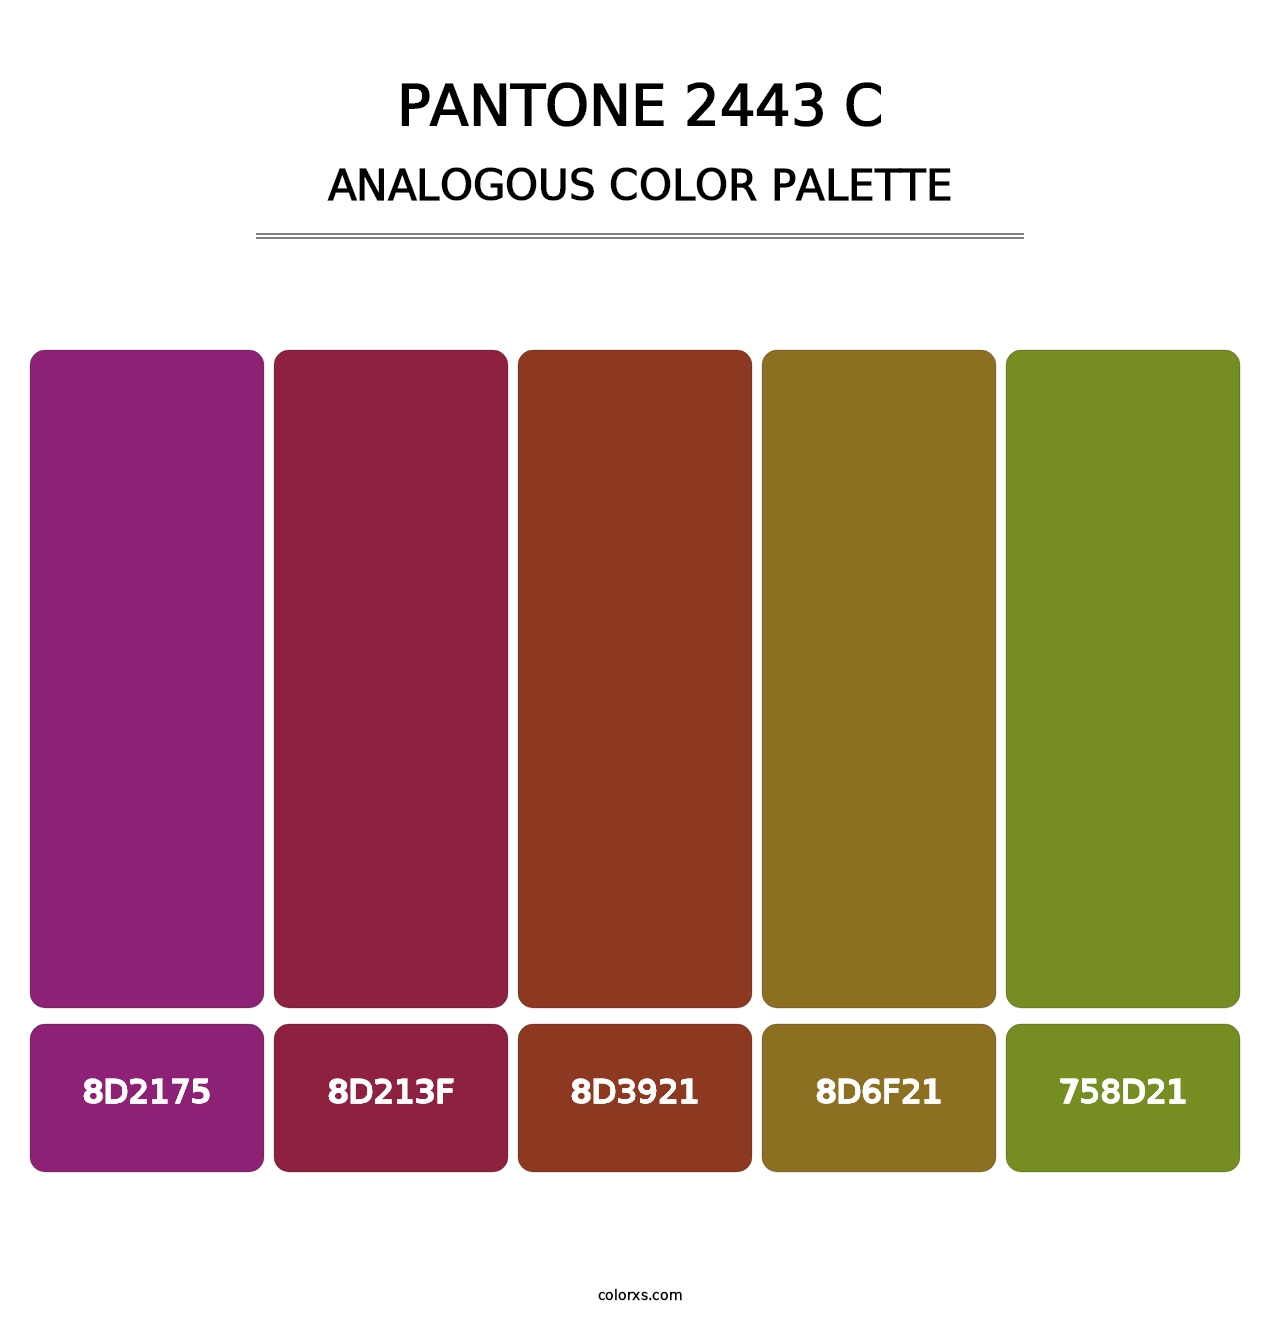 PANTONE 2443 C - Analogous Color Palette